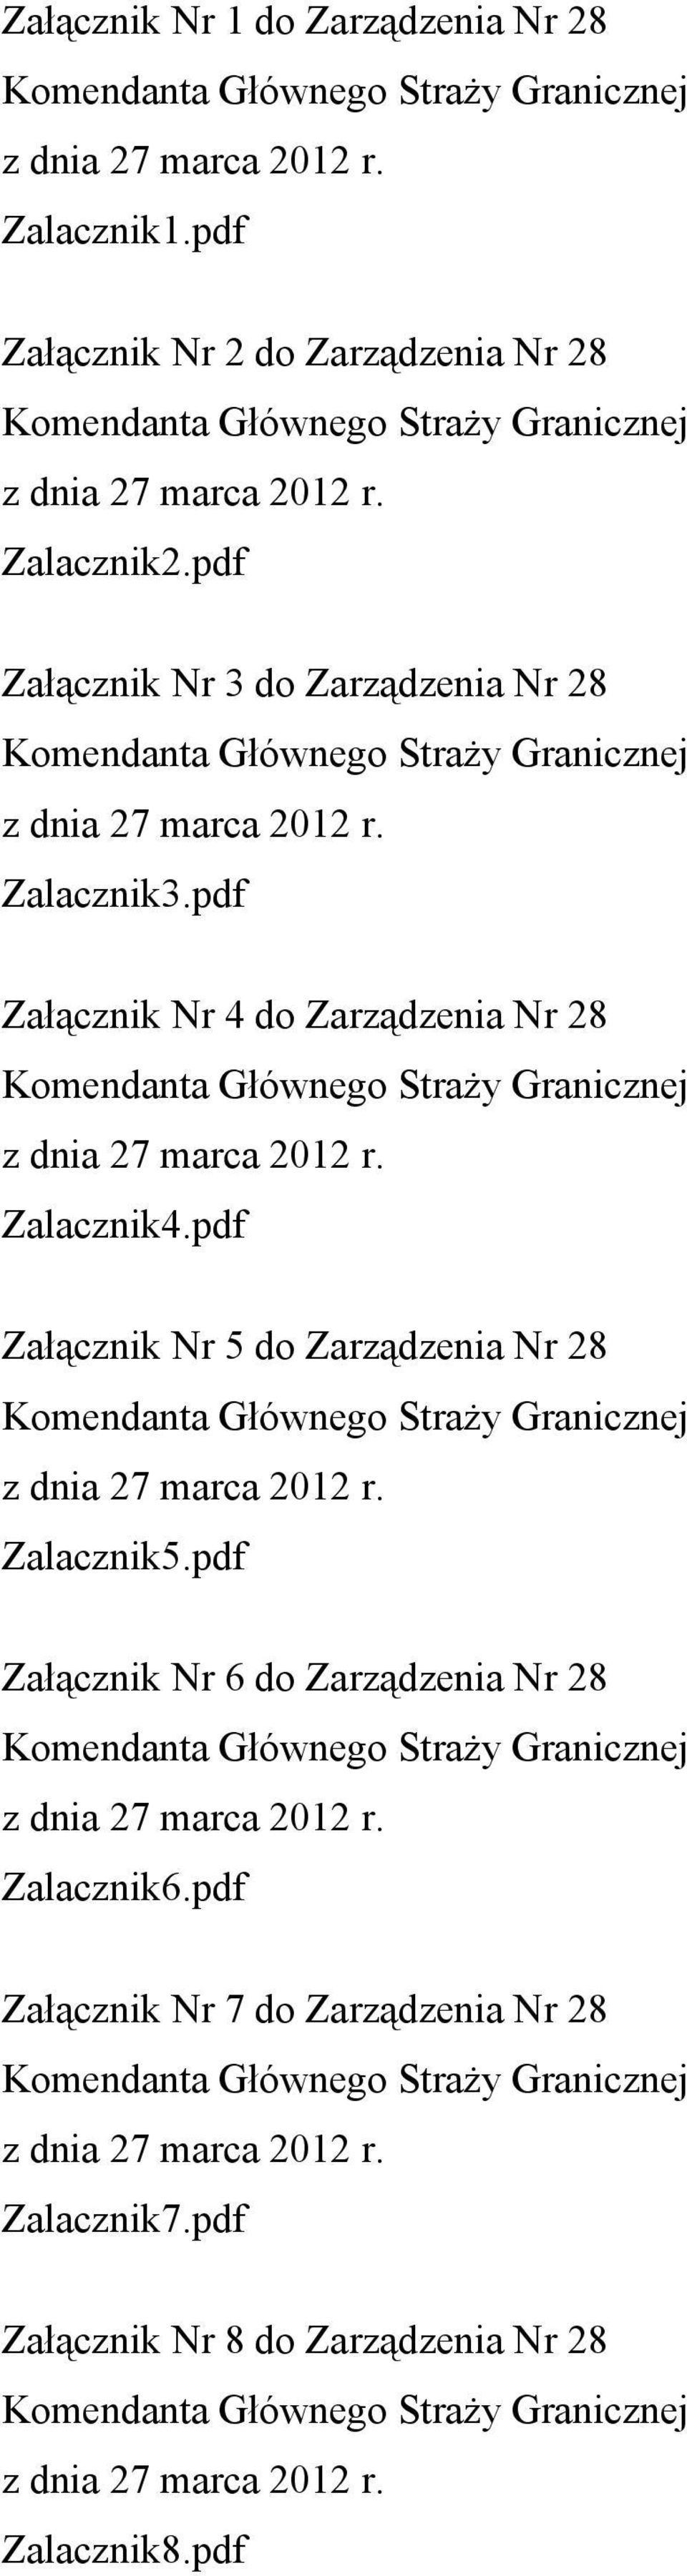 pdf Załącznik Nr 5 do Zarządzenia Nr 28 Zalacznik5.pdf Załącznik Nr 6 do Zarządzenia Nr 28 Zalacznik6.